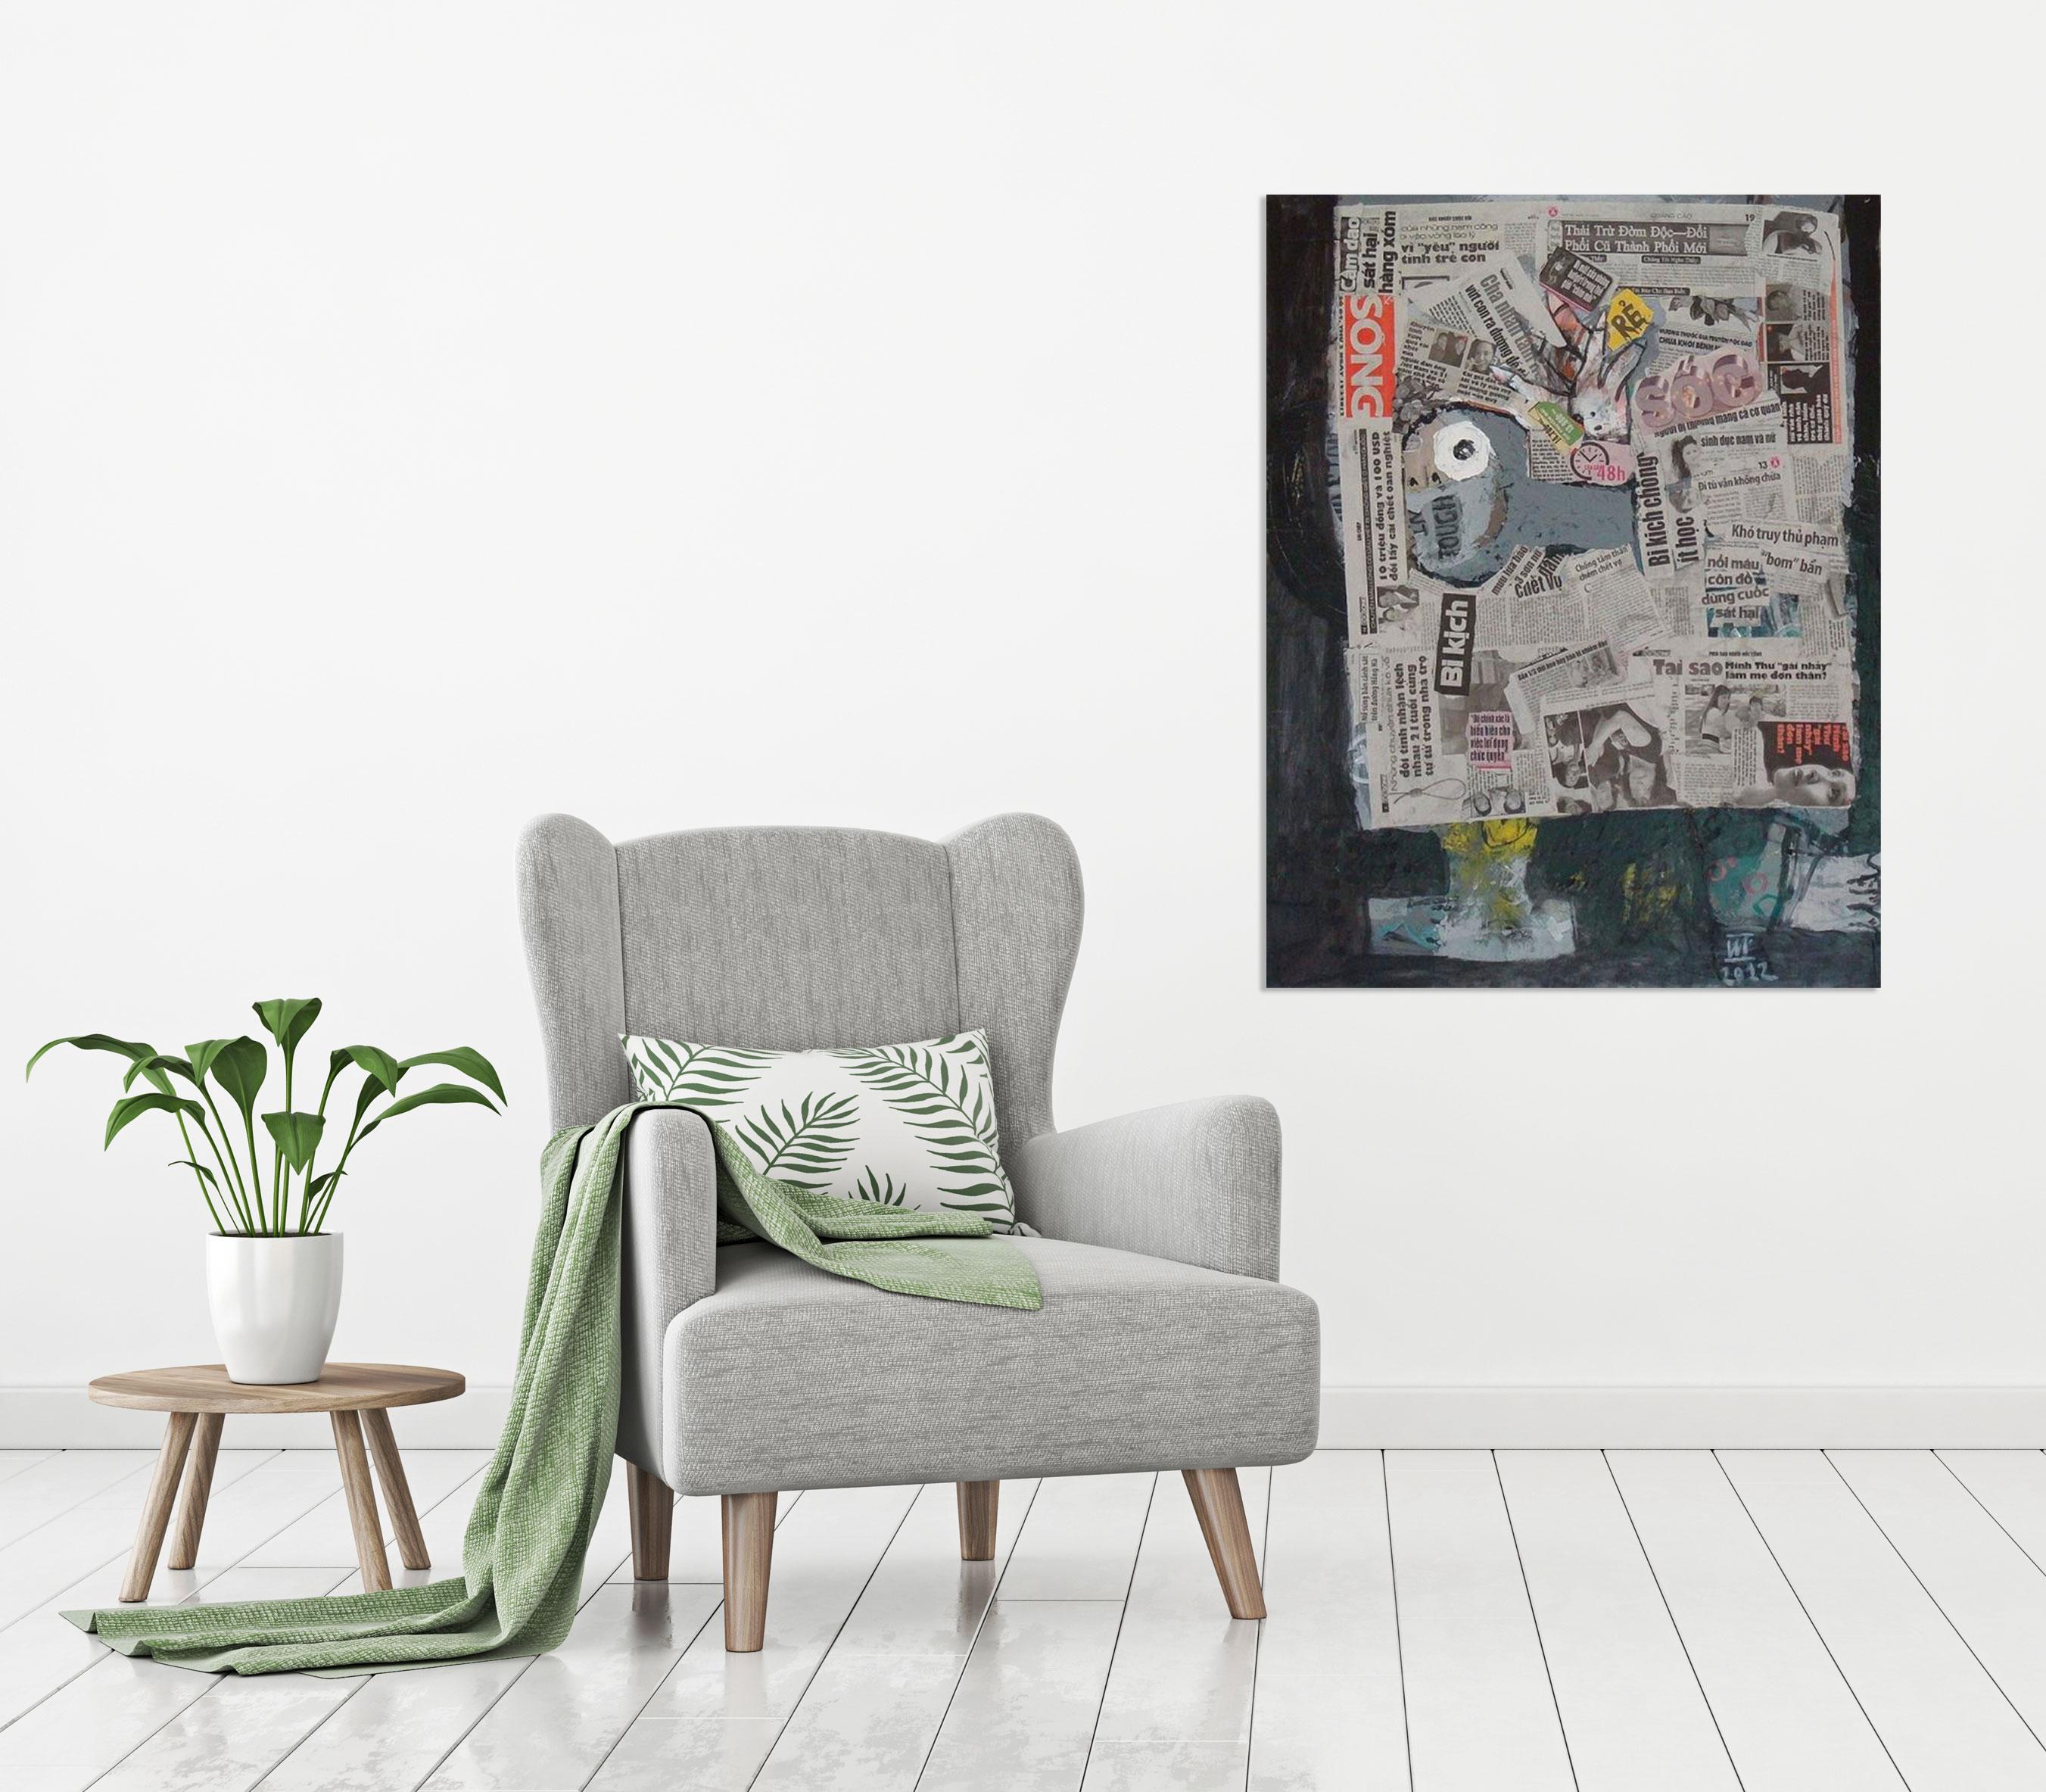 'Reading Newspaper 1' est une peinture expressionniste abstraite de taille moyenne, inspirée de Basquiat, réalisée à l'acrylique et au papier journal sur toile par l'artiste vietnamien Nguyen Cong Cu en 2012. Avec une combinaison de papier journal